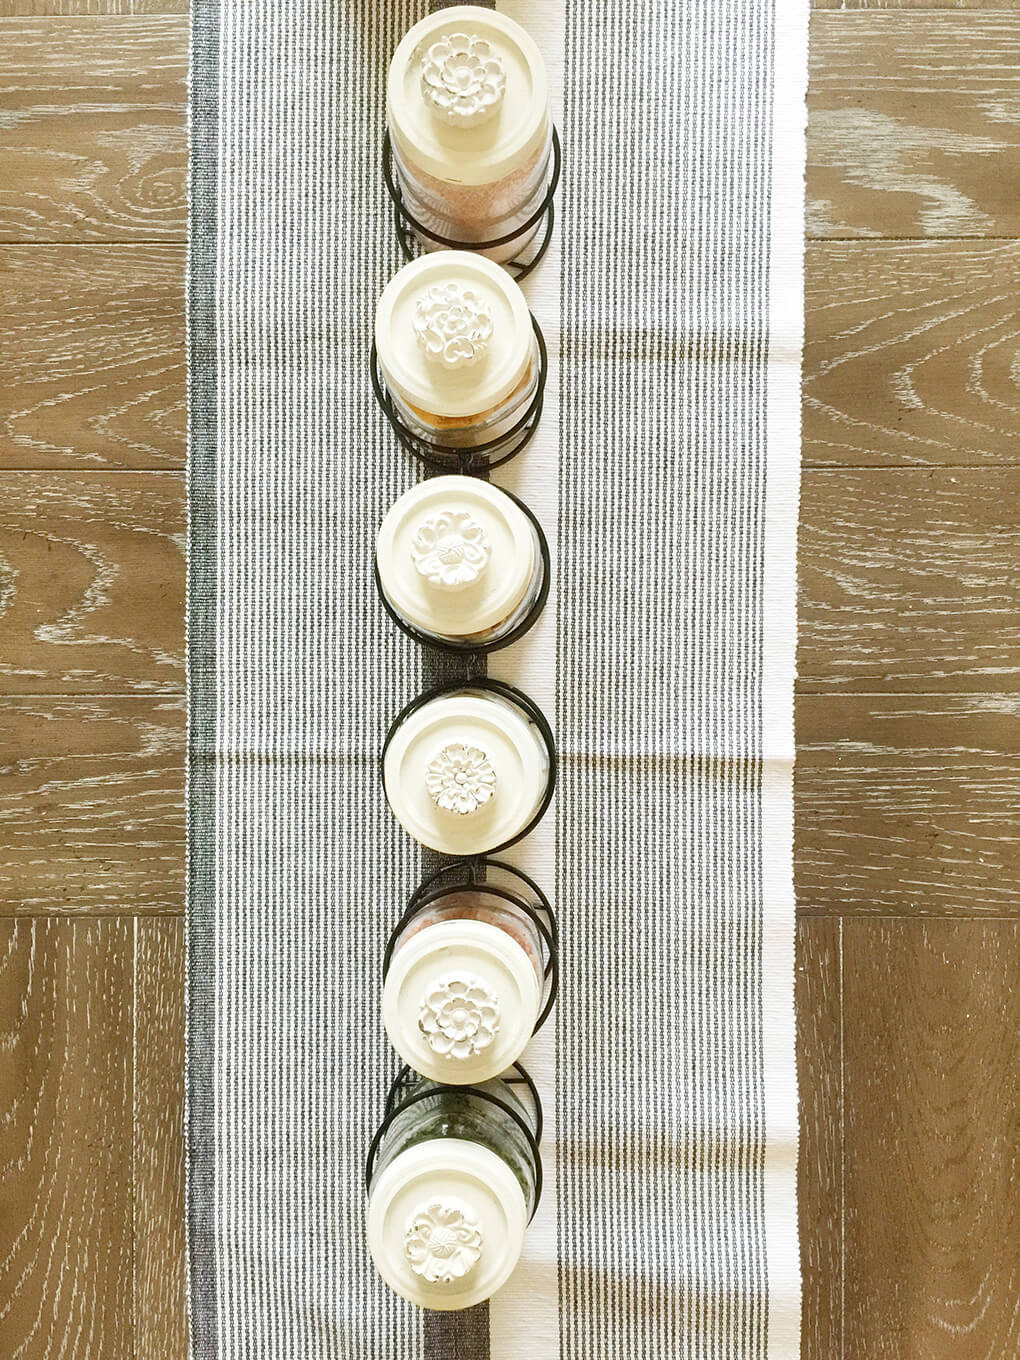 DIY Mason Jar Table Centerpieces sarahkayhoffman.com Row of lids